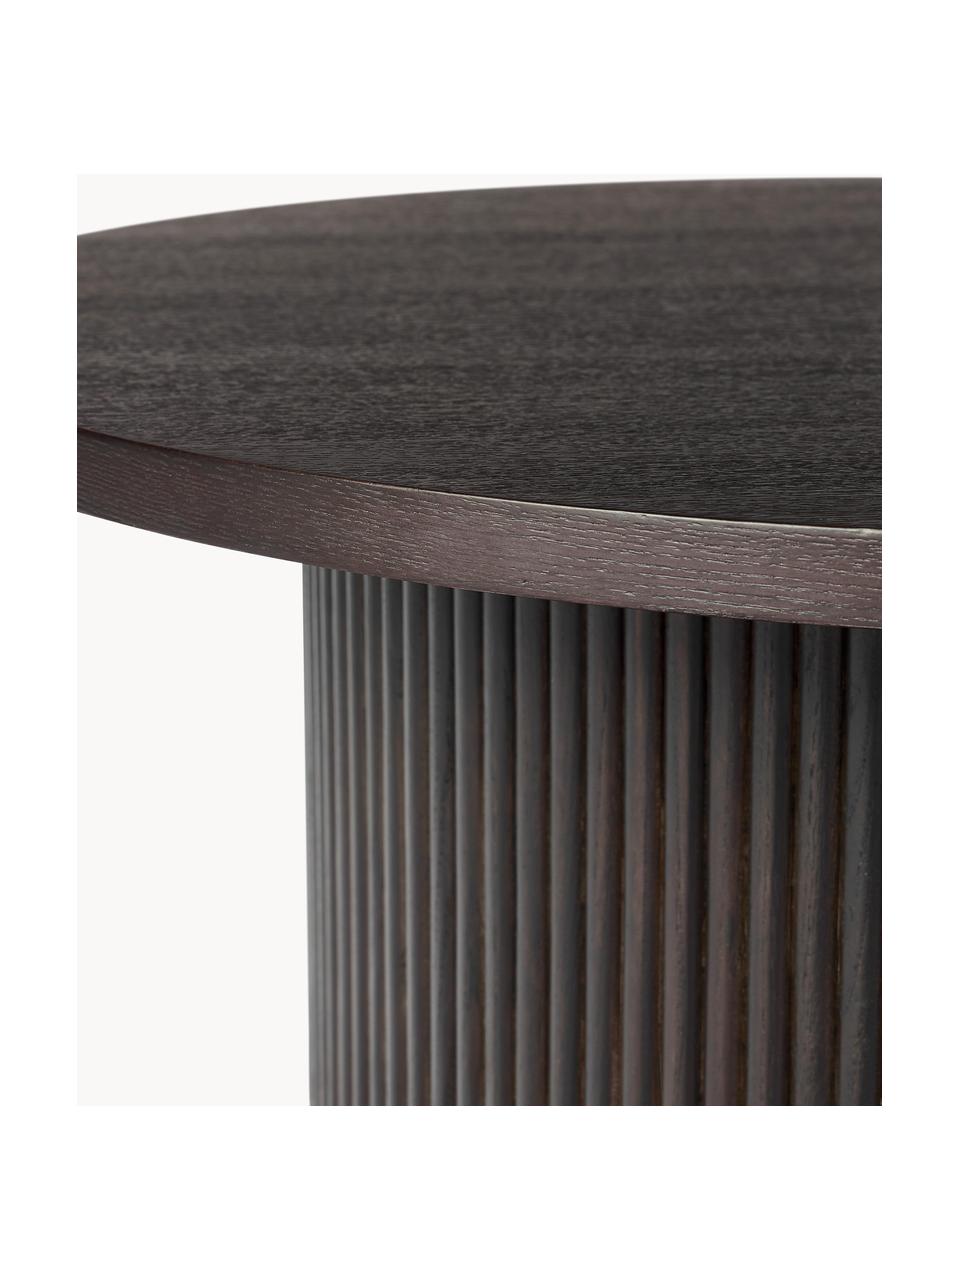 Okrúhly konferenčný stolík z dreva Nele, MDF-doska strednej hustoty s jaseňovou dyhou, Drevo, tmavohnedá lakovaná, Ø 85 x V 33 cm